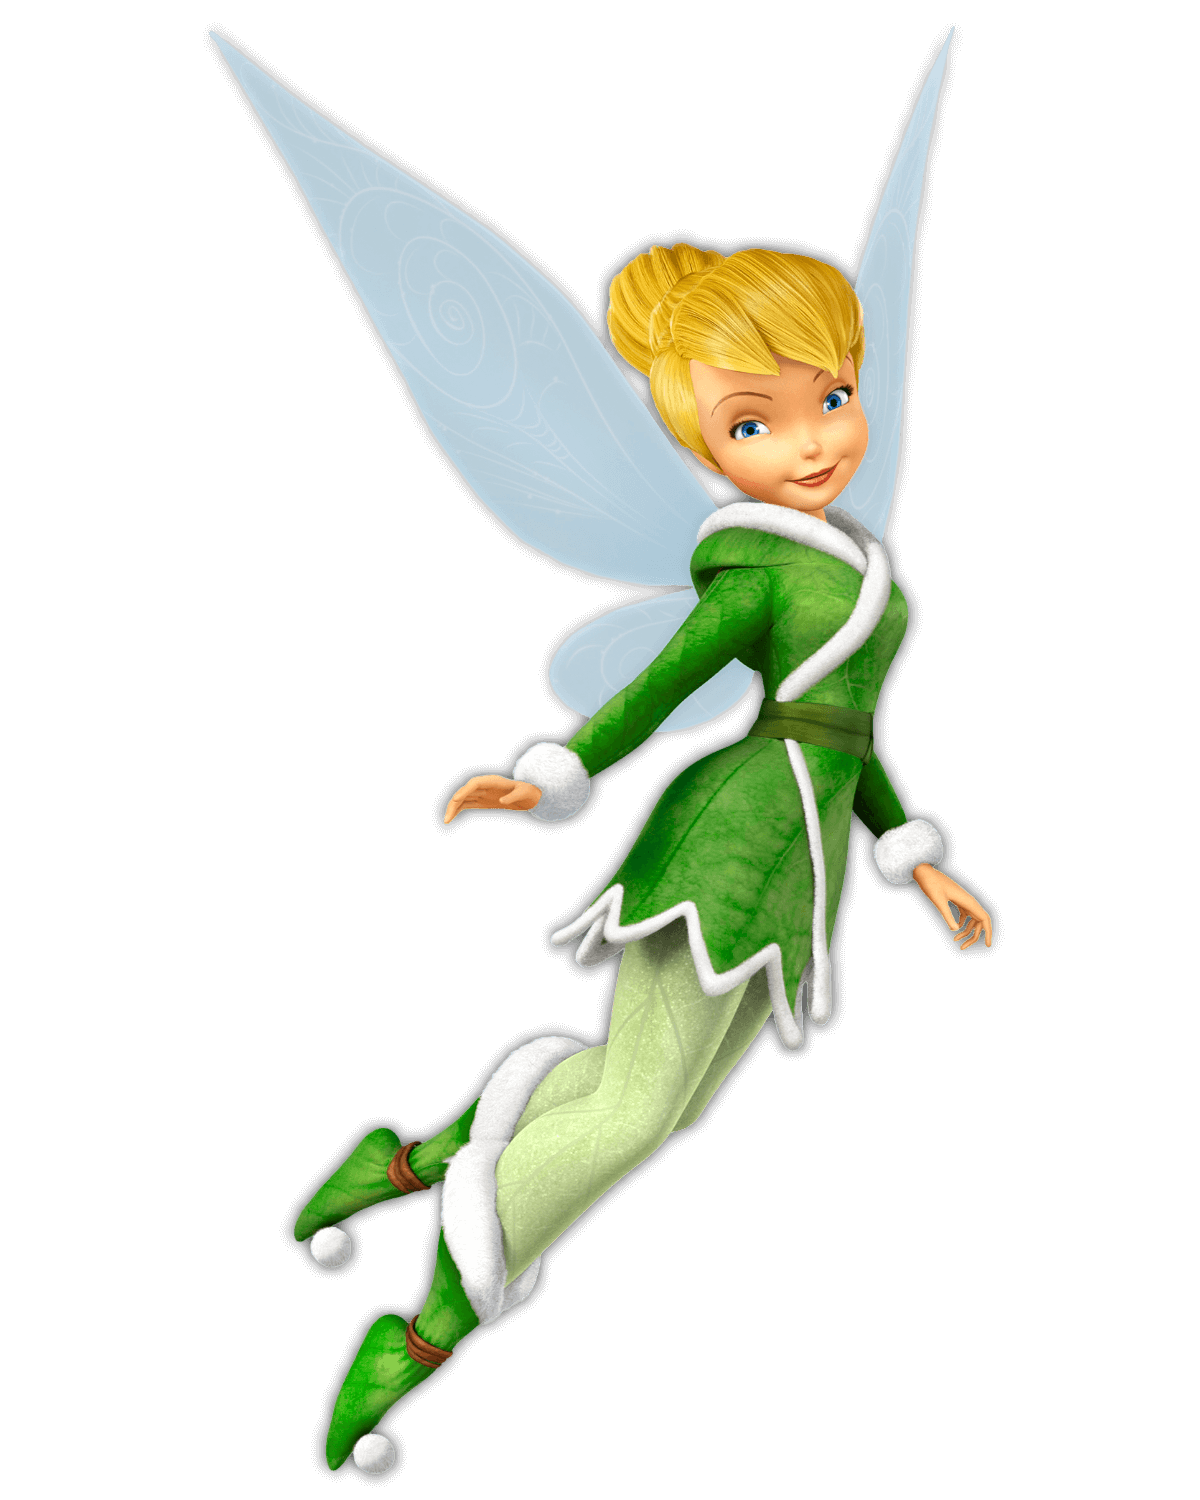 Die Fee Tinker Bell aus dem Film Peter Pan hat Flügel auf dem Rücken. Sie ist vollständig in Grün gkleidet: Jacke, Hose und Schuhe sind in unterschiedlichen Grüntönen gestaltet, auf den Schuhen befinden sich Glöckchen